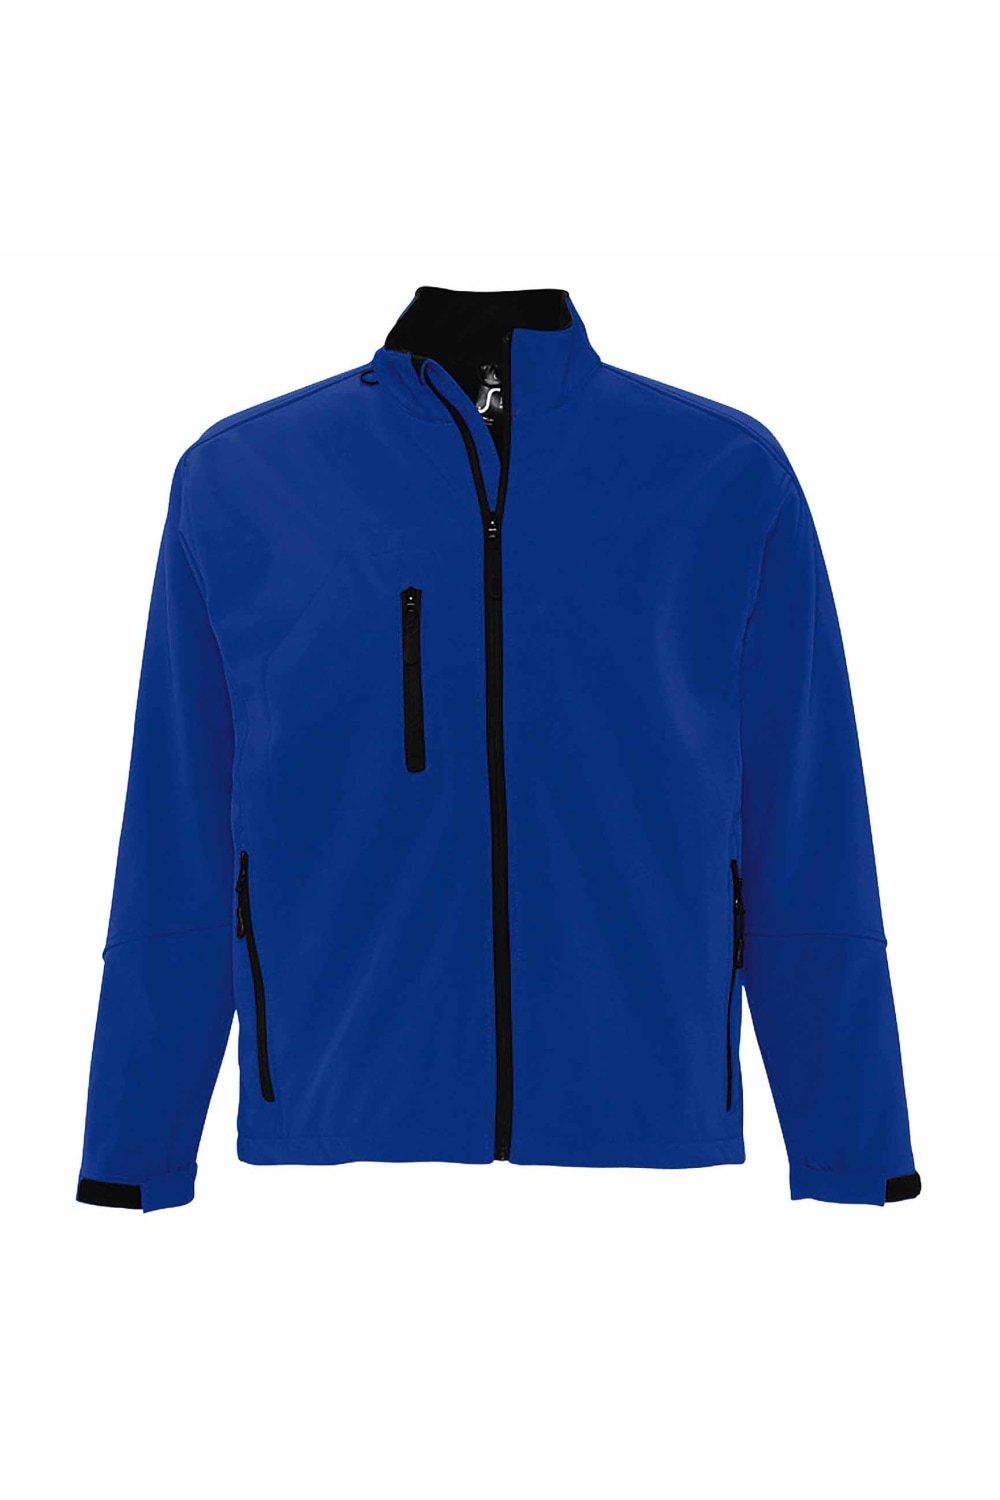 Куртка Relax Soft Shell (дышащая, ветрозащитная и водостойкая) SOL'S, синий